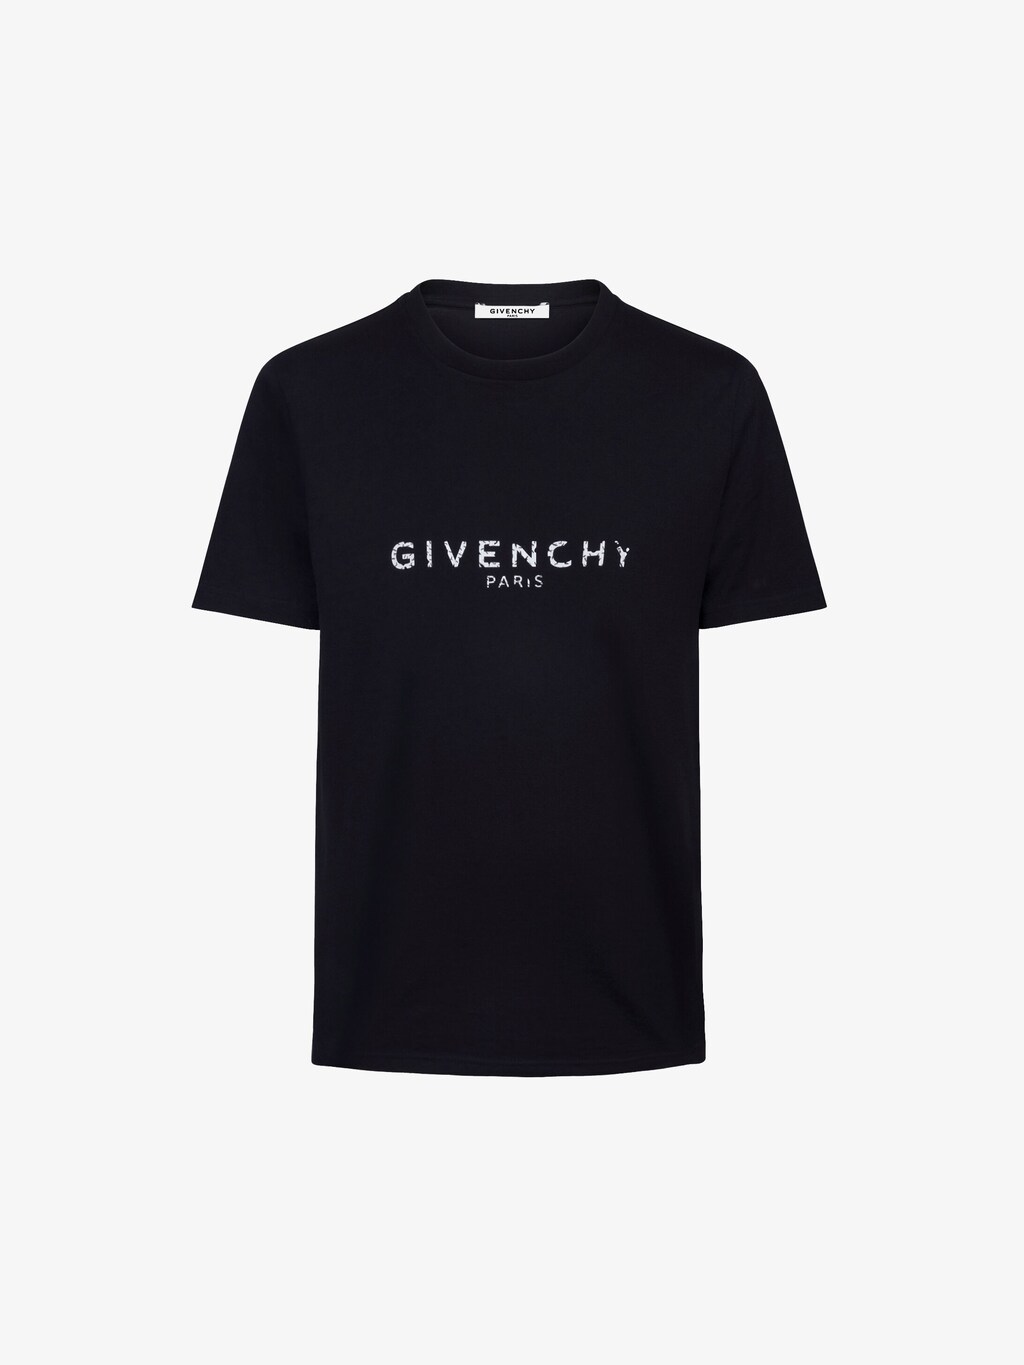 GIVENCHY PARIS slim fit t-shirt | GIVENCHY Paris